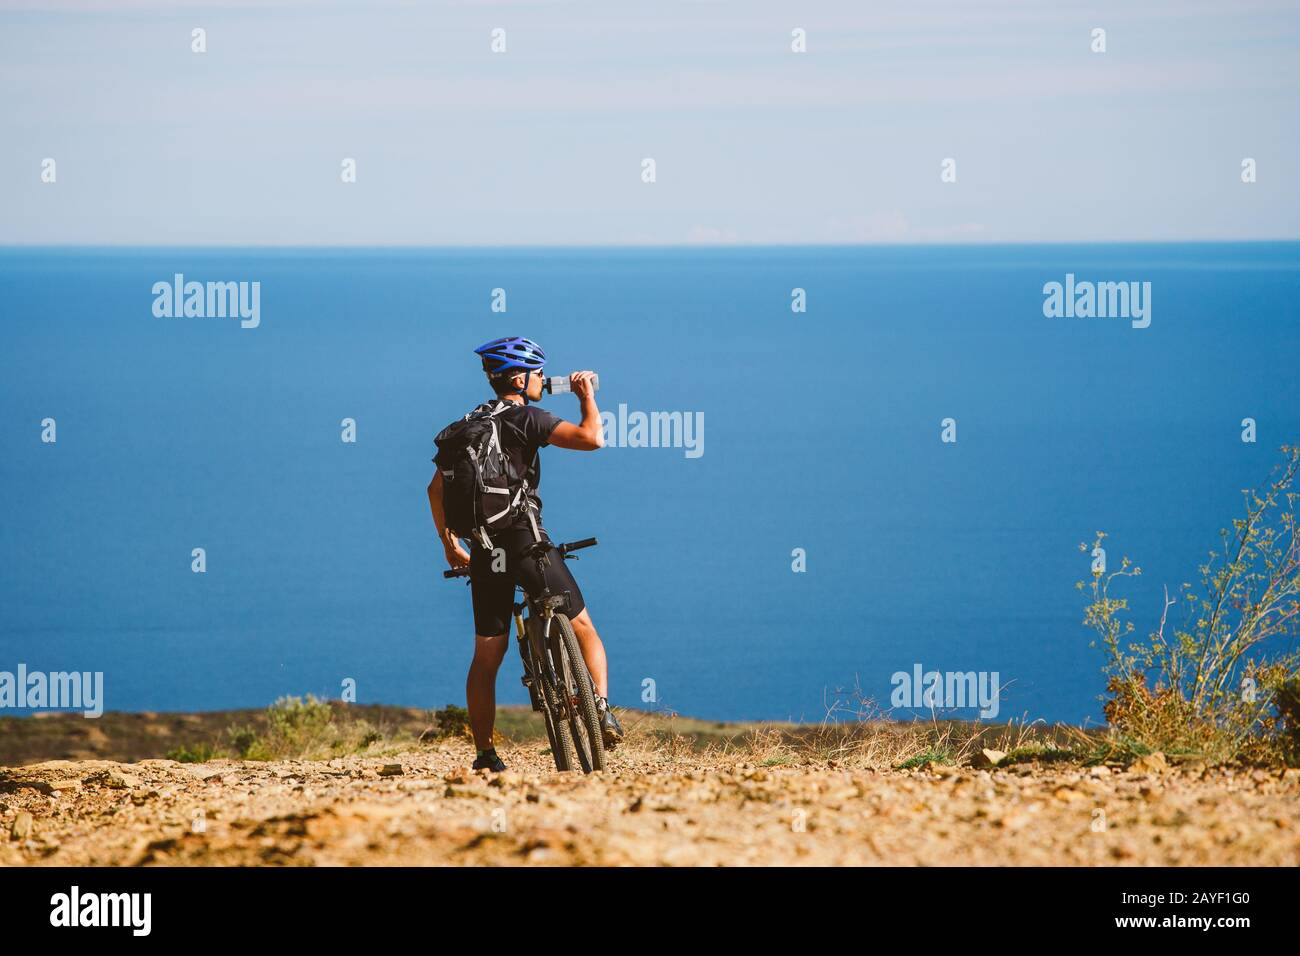 Ein junger Kerl auf dem Mountainbike gestoppt Wasser aus einem Krug auf ein steiniger Weg in der Nähe des Mittelmeers zu trinken in Spanien. Stockfoto